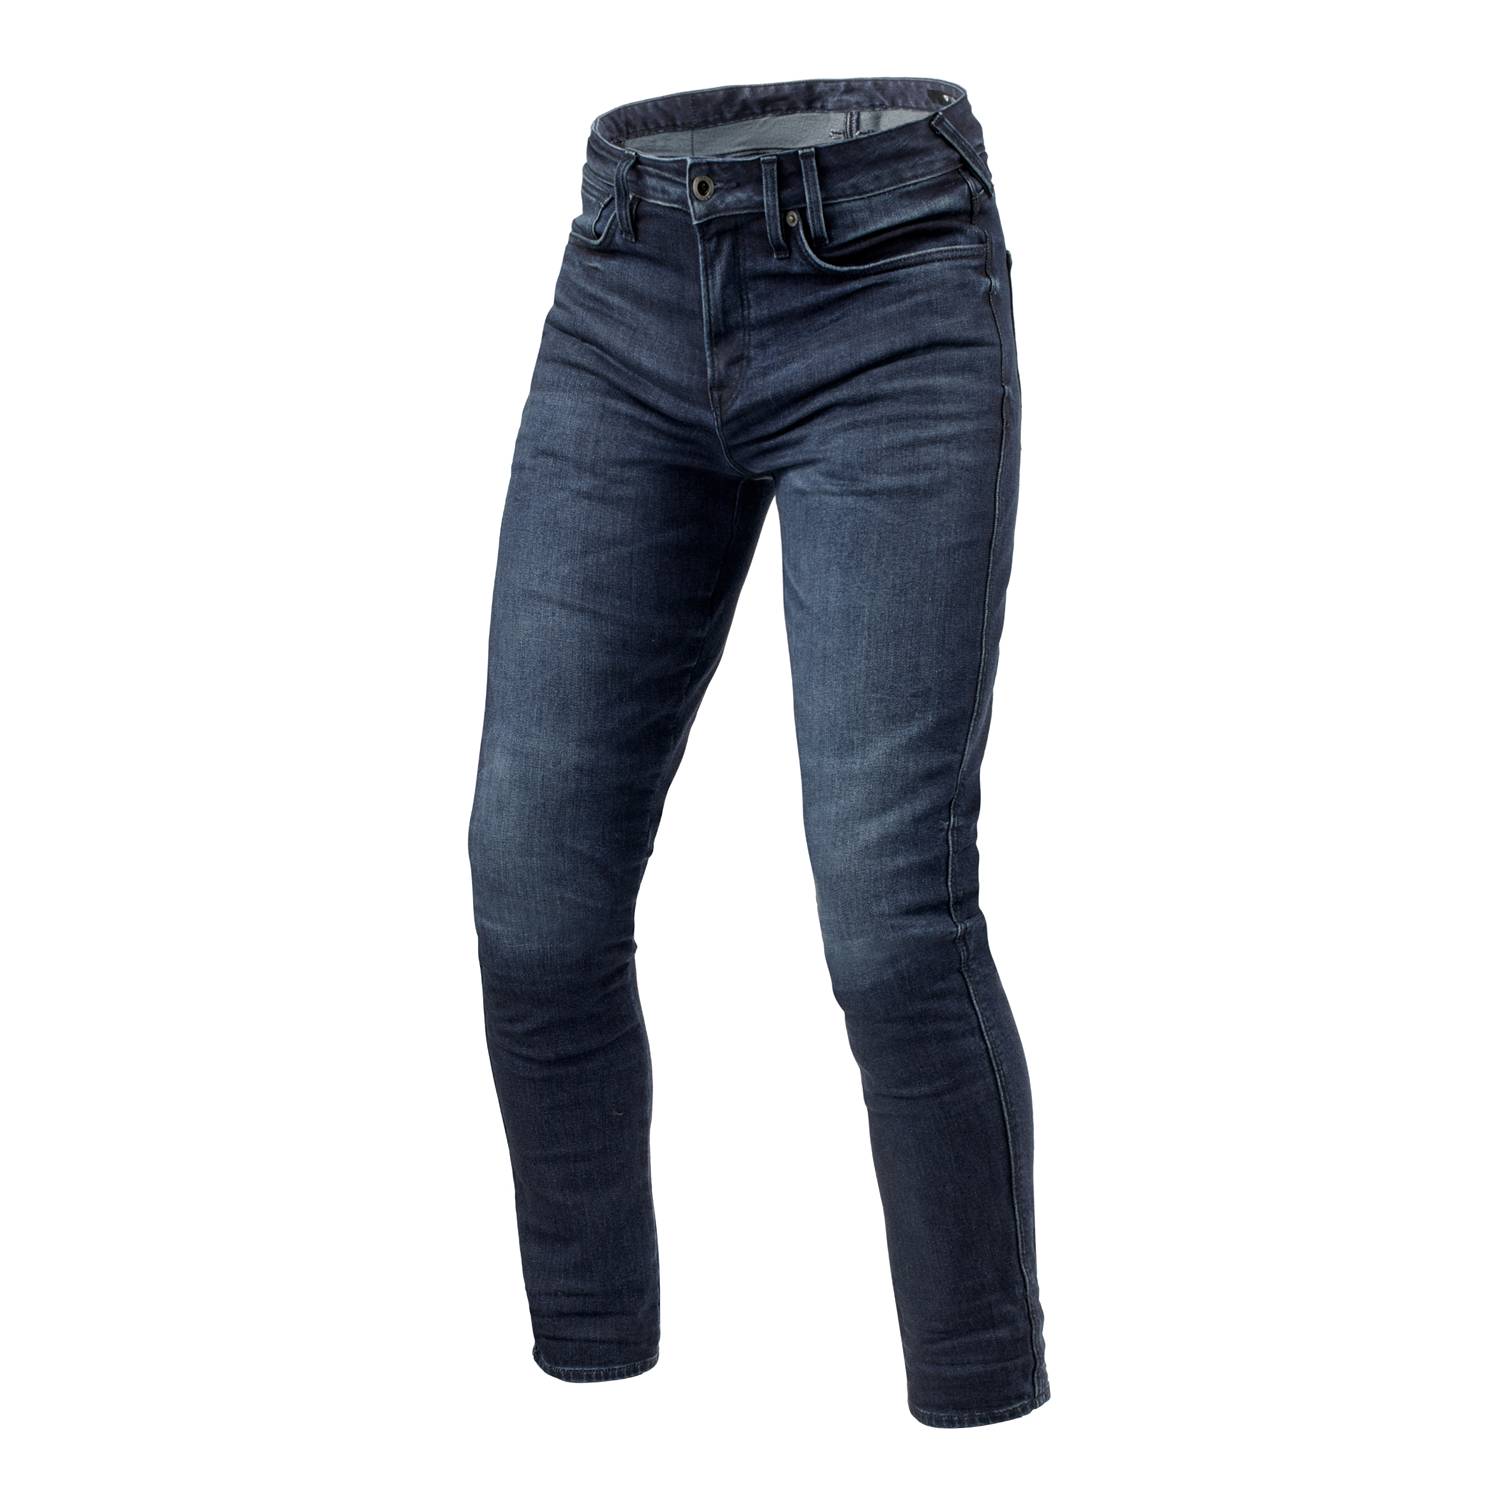 Image of REV'IT! Jeans Carlin SK Dark Blue Used L34 Motorcycle Jeans Size L34/W33 EN